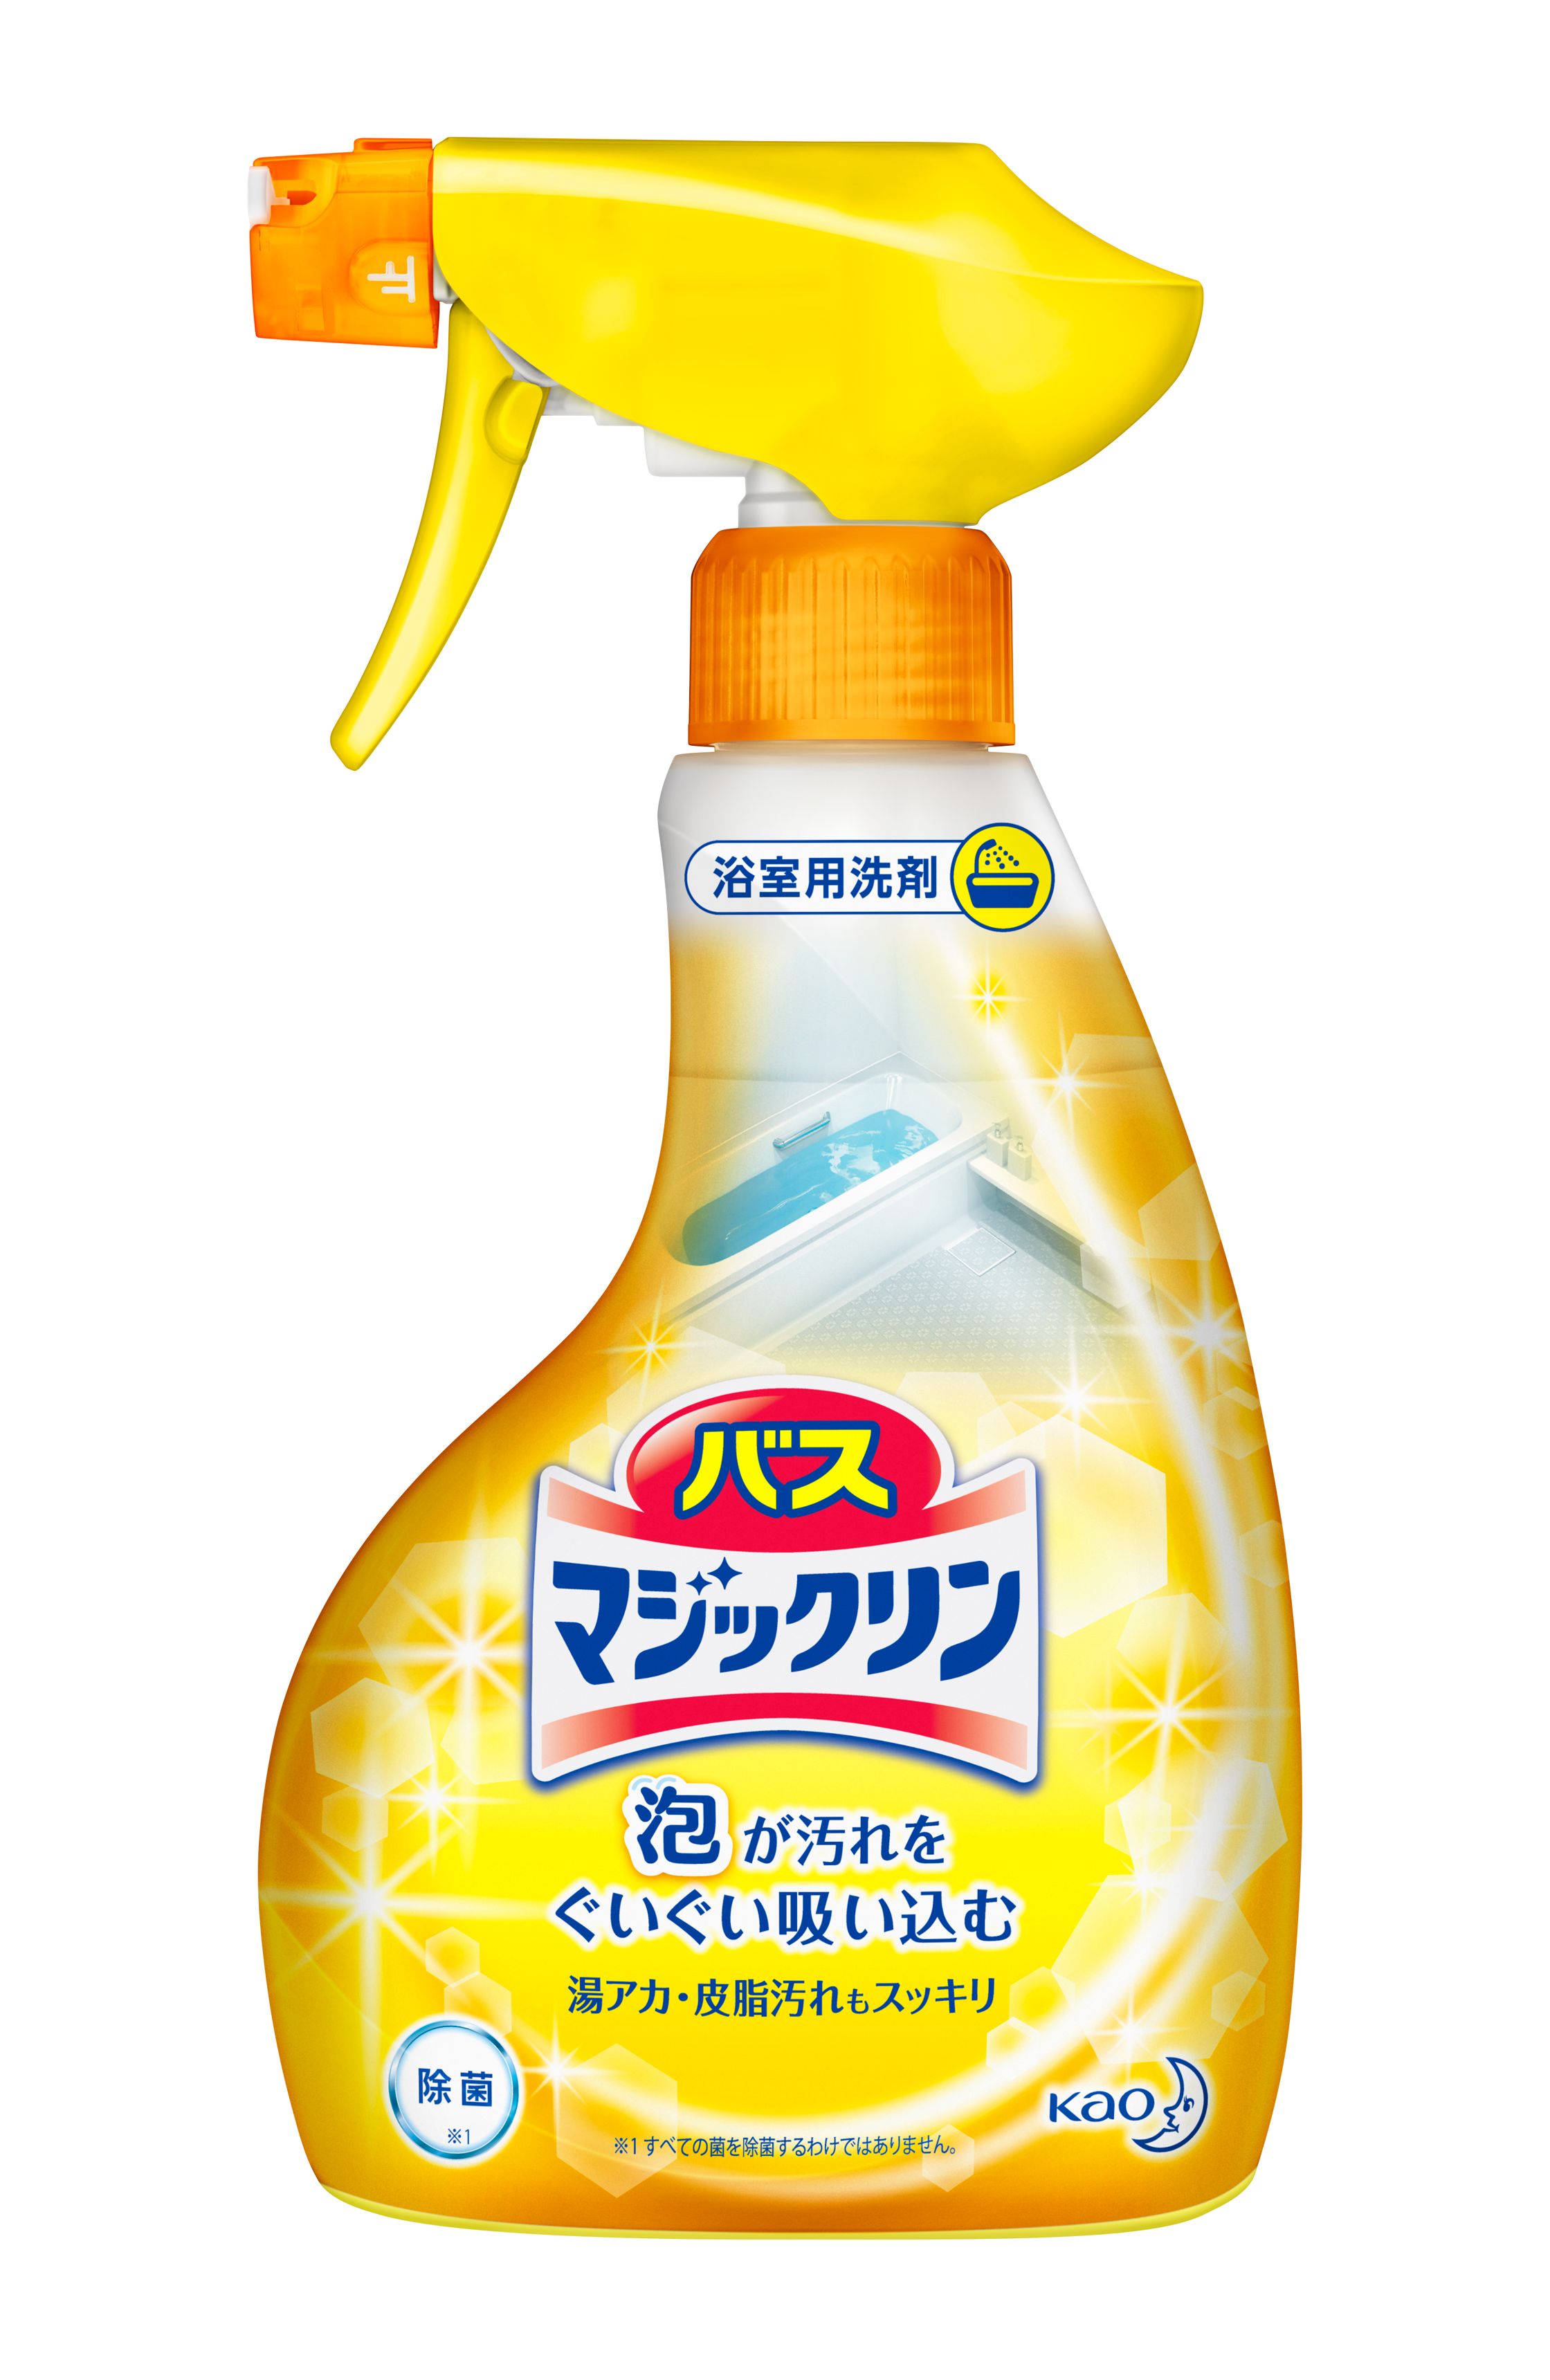 ニチゴー 泡スプレー おふろ洗い つめかえ用 350ml 日本合成洗剤 返品種別A